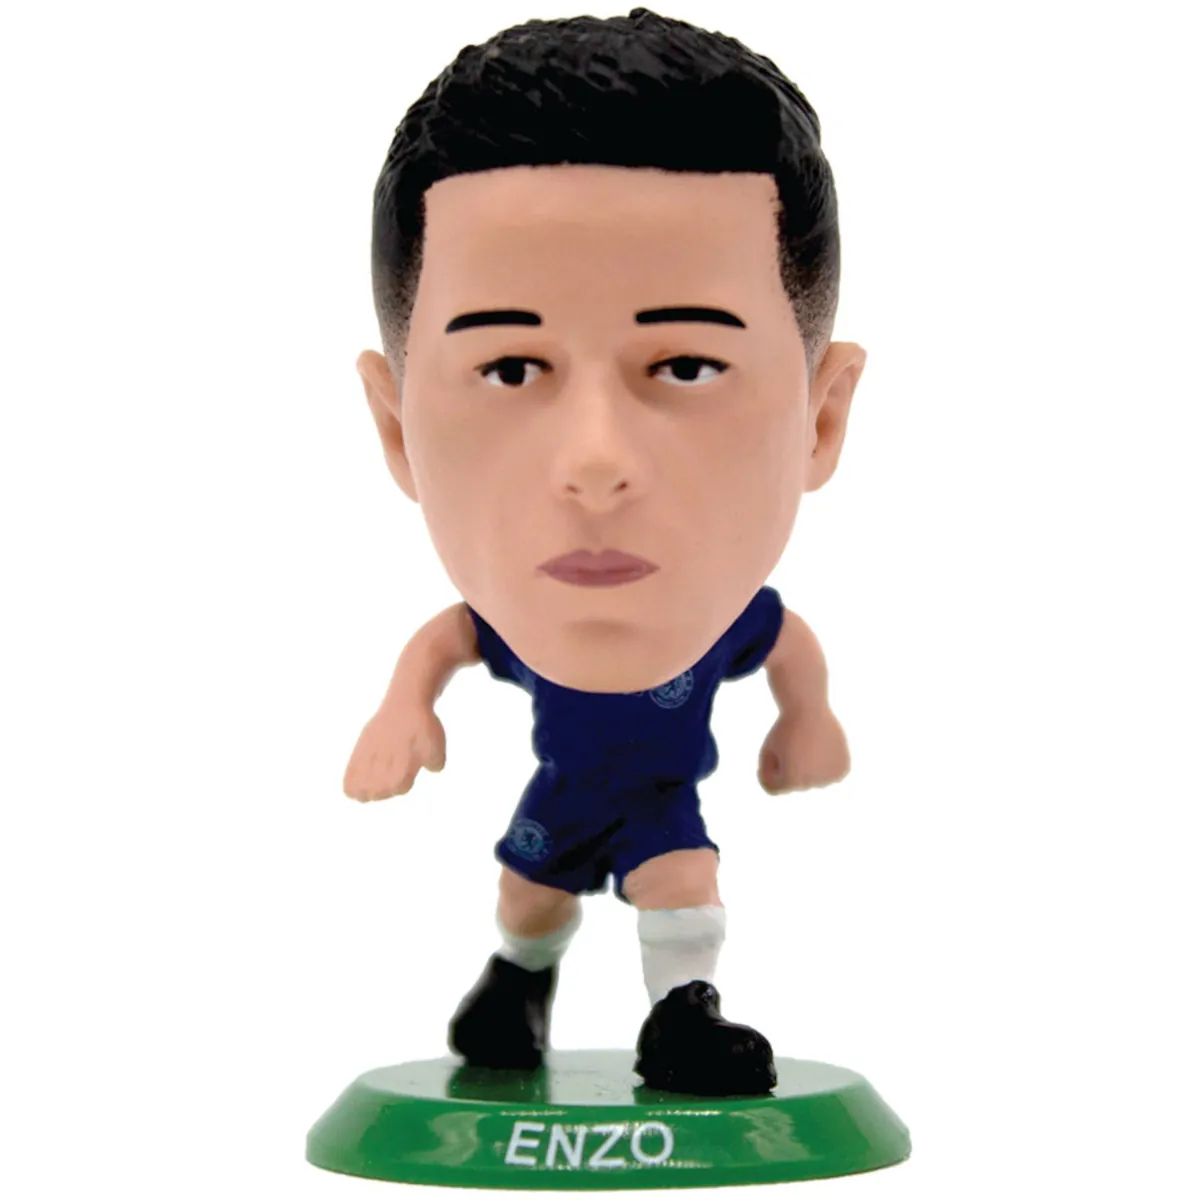 TM-03526 Chelsea FC SoccerStarz Collectable Figure - Enzo Fernández